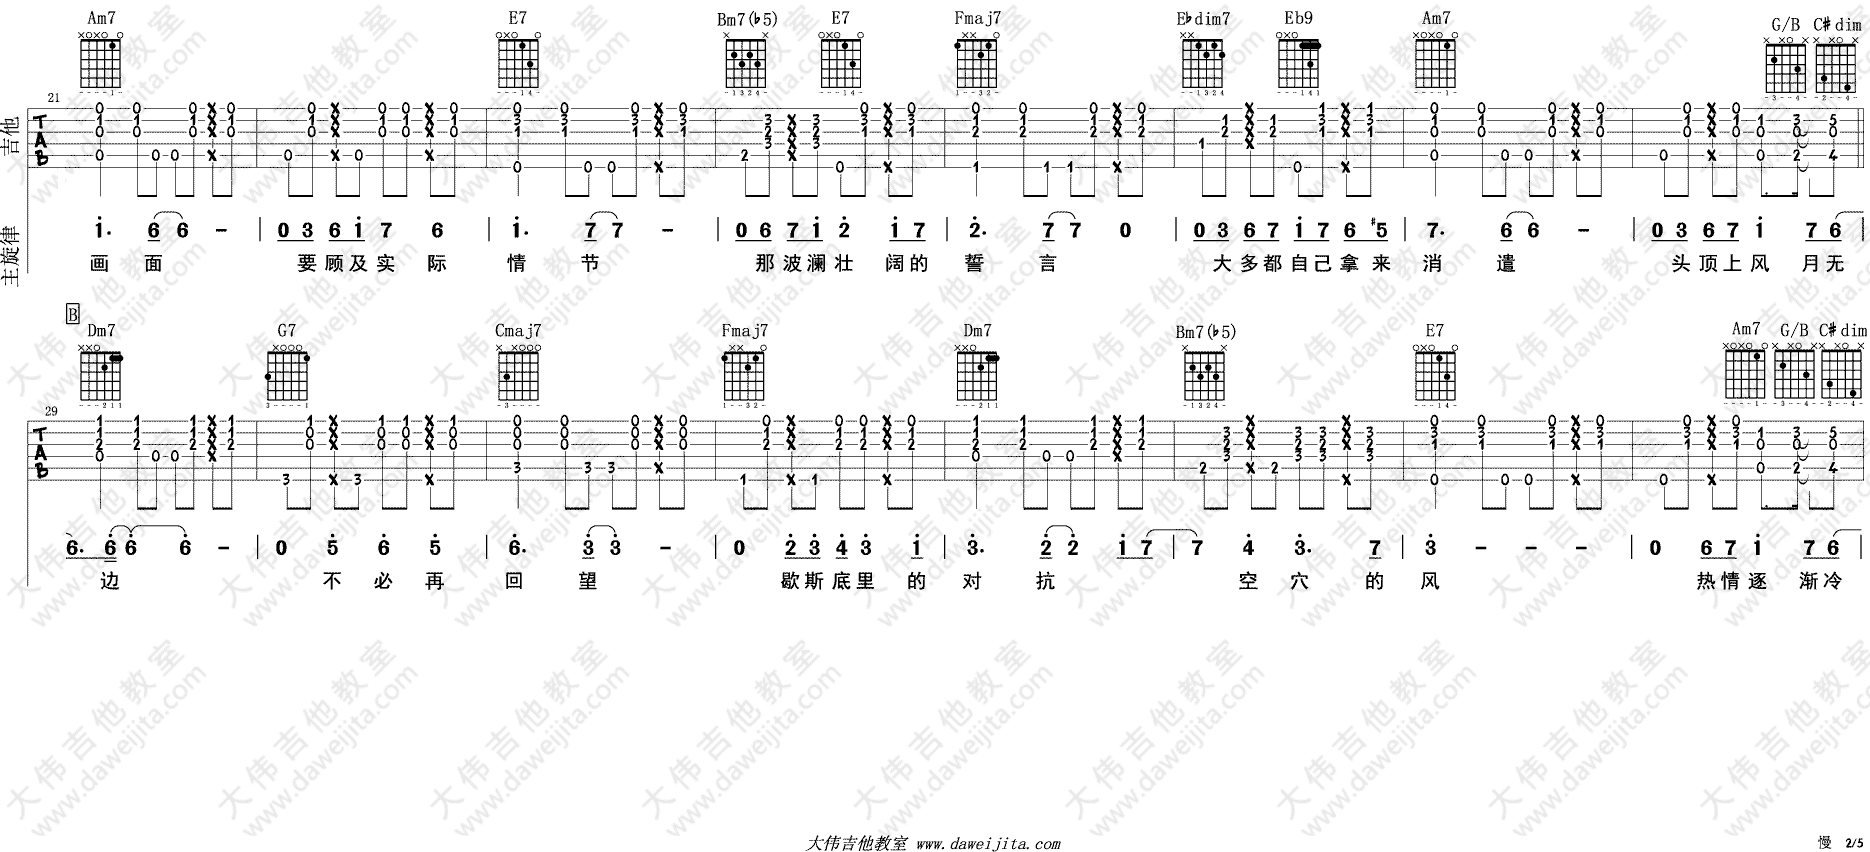 李上安《慢》吉他谱(C调)-Guitar Music Score